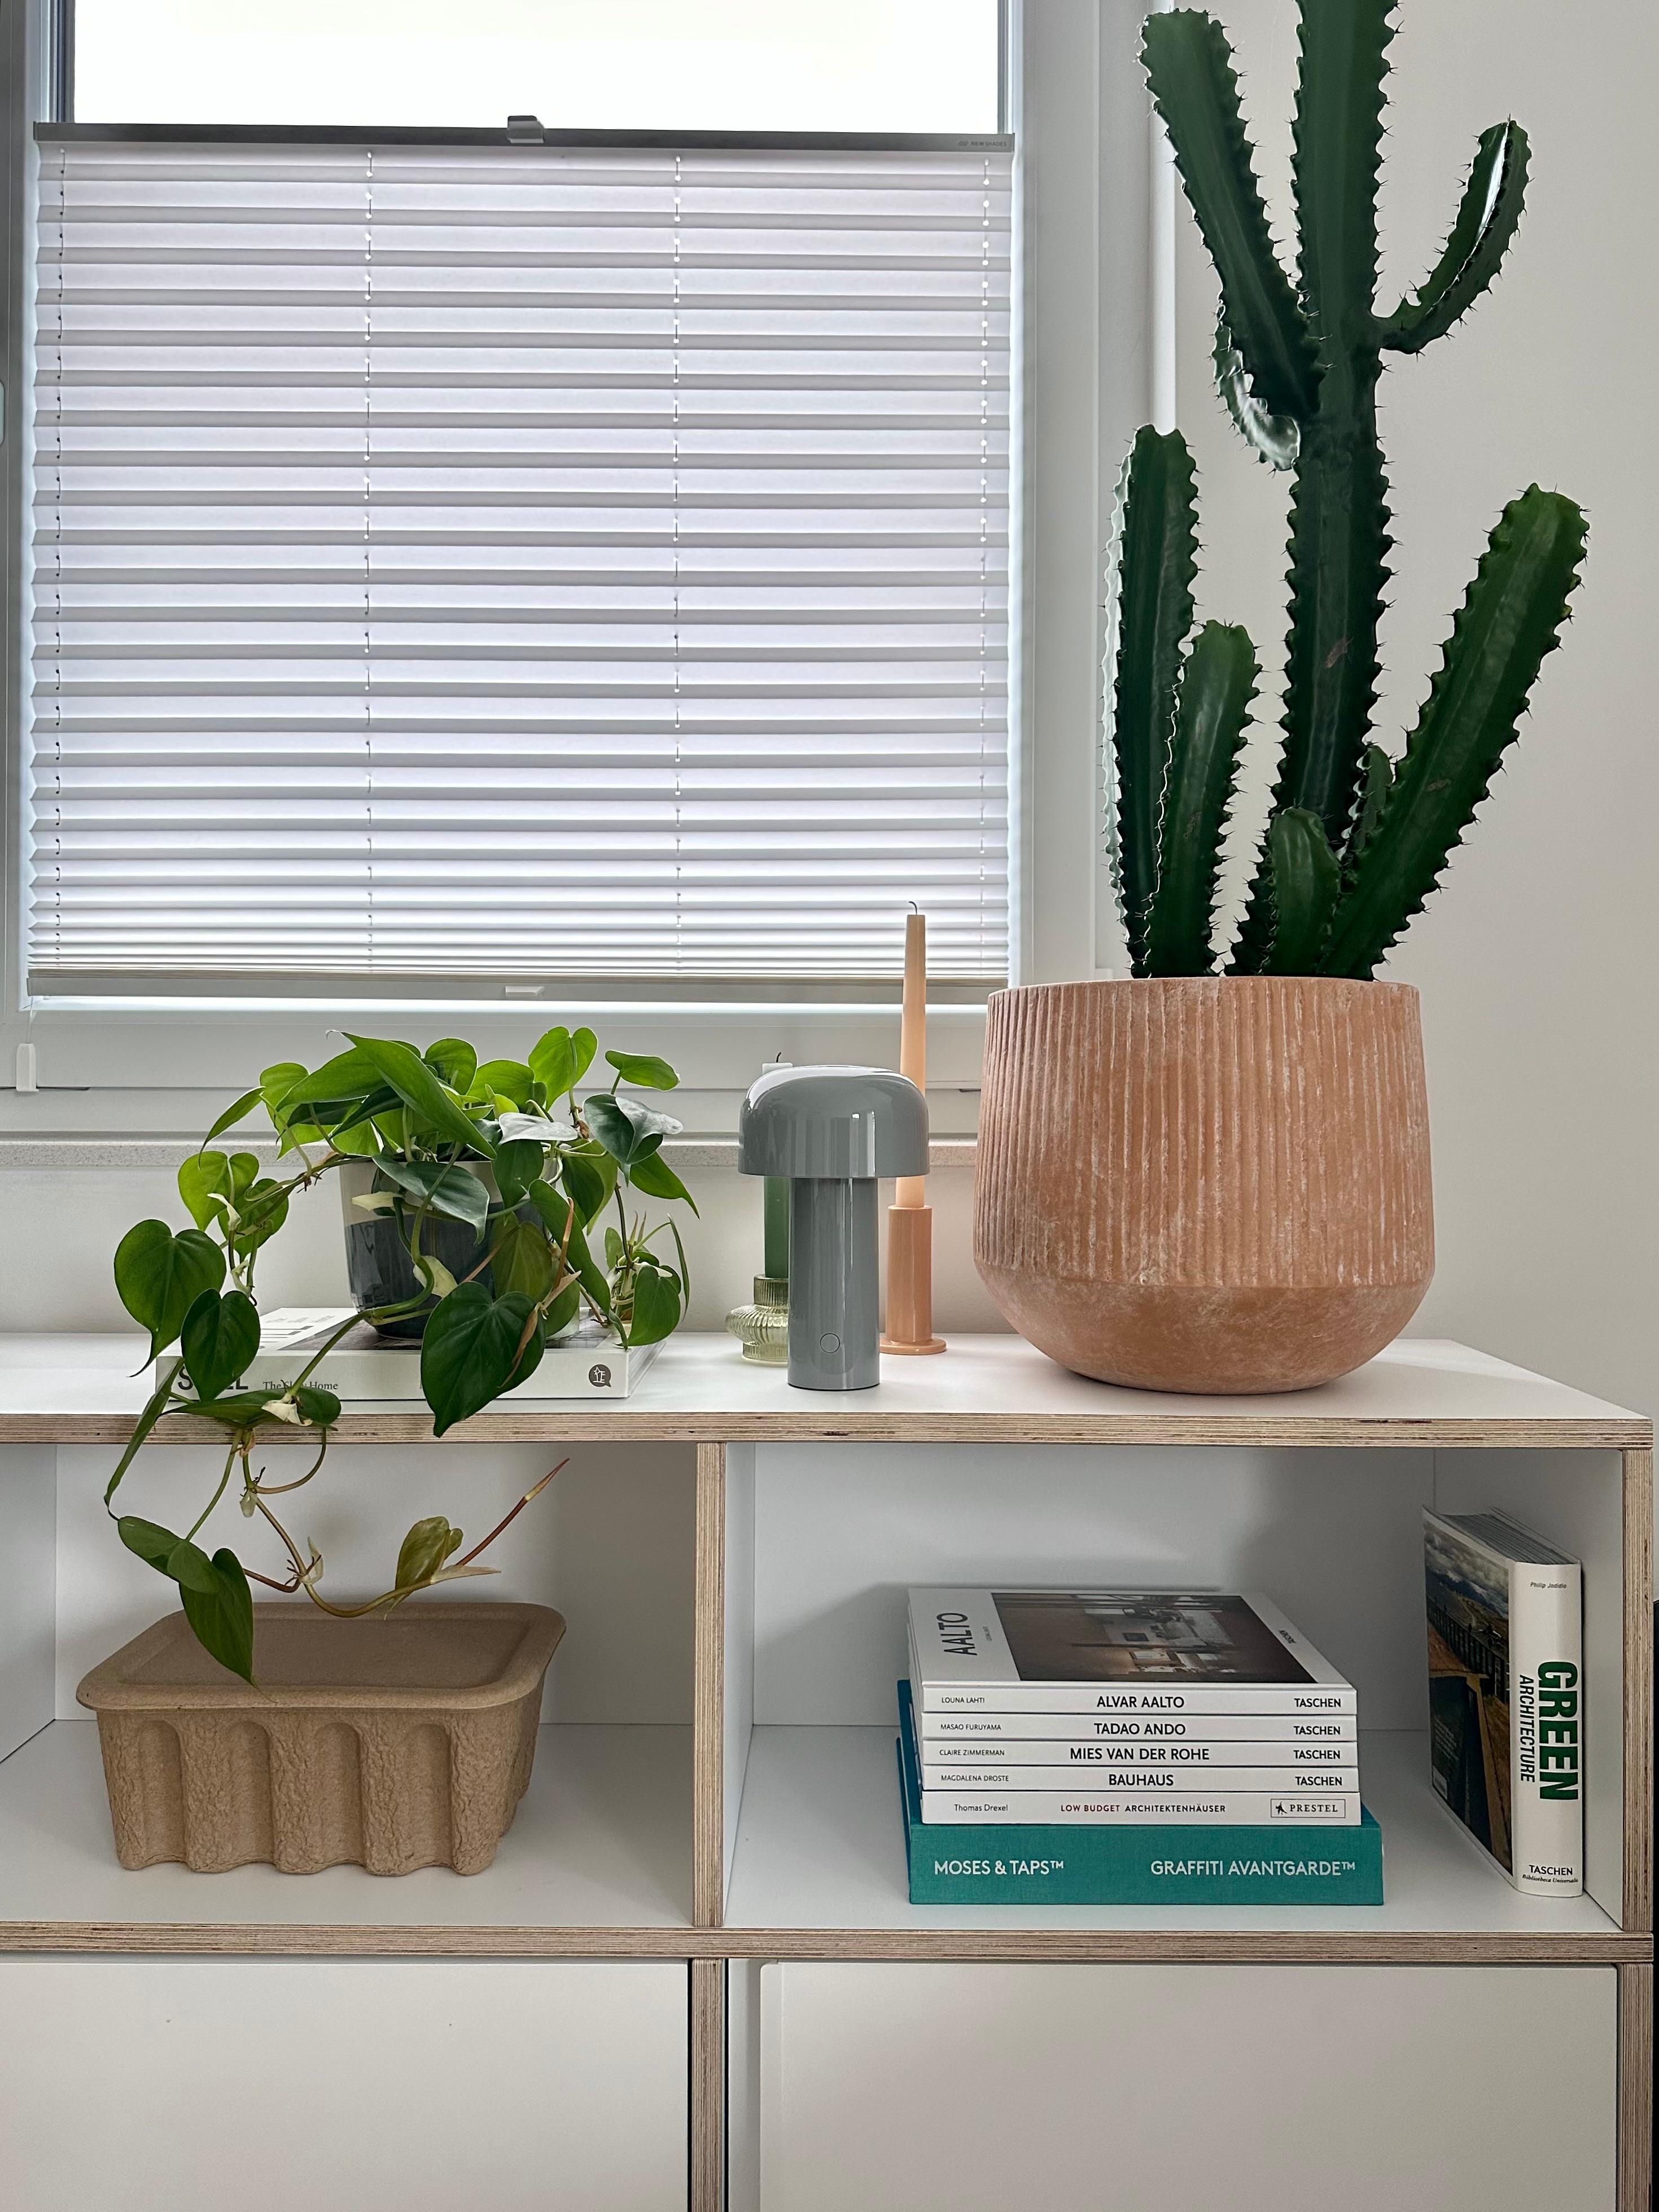 #wohnzimmer #sideboard #dekoideen #übertopf #terrakotta #kaktus #fermliving #wohnzimmerdeko #floslampe #hängepflanzen